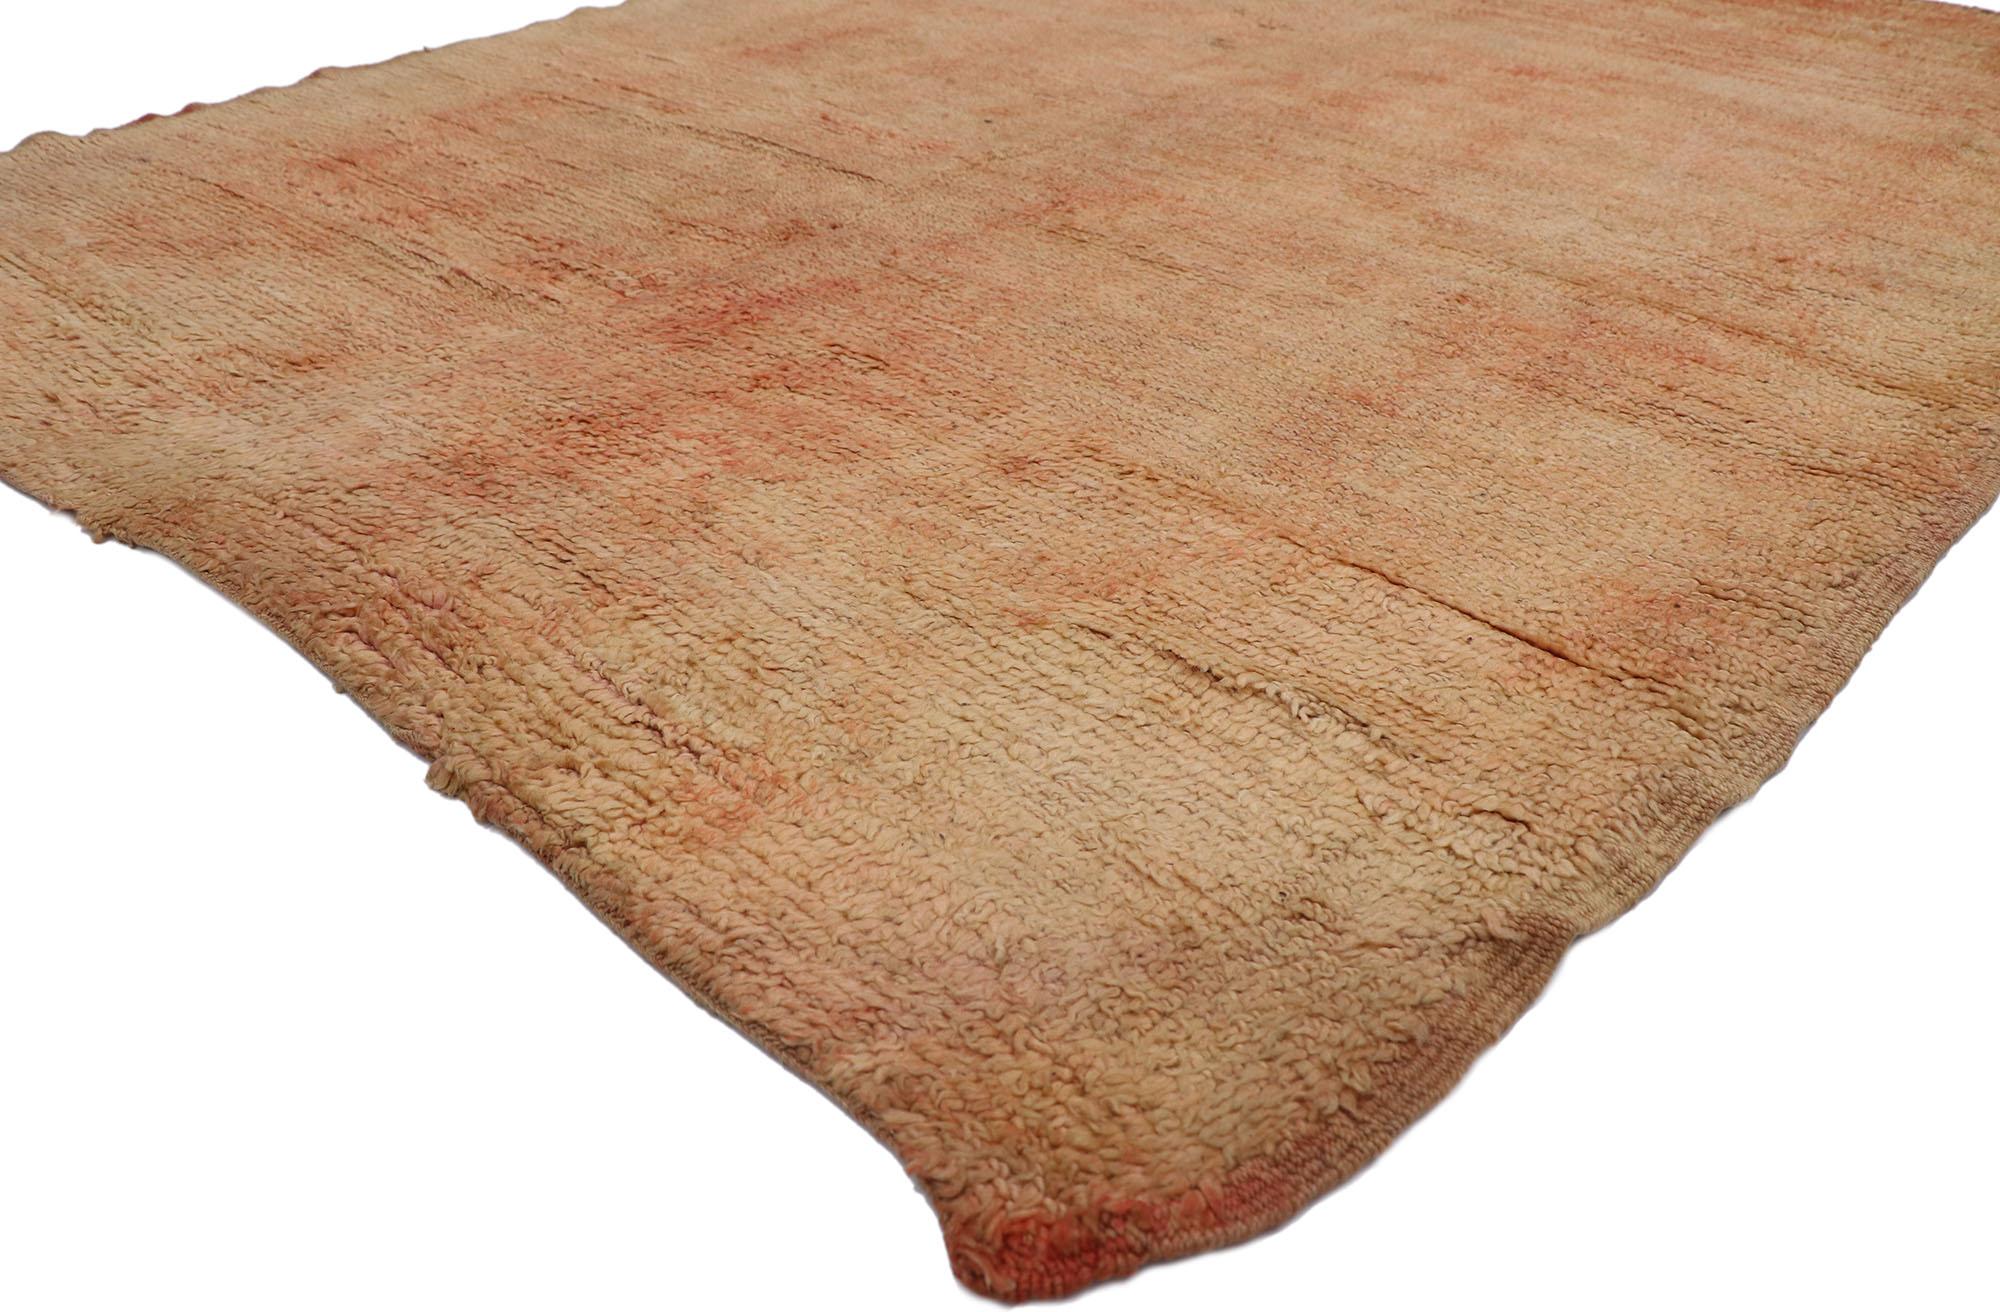 21517 Tapis marocain Vintage Beni Mrirt, 06'08 x 08'07. Les tapis Beni Mrirt représentent une tradition vénérée du tissage marocain, célébrée pour leur texture somptueuse, leurs motifs géométriques et leurs tons de terre apaisants. Fabriqués à la